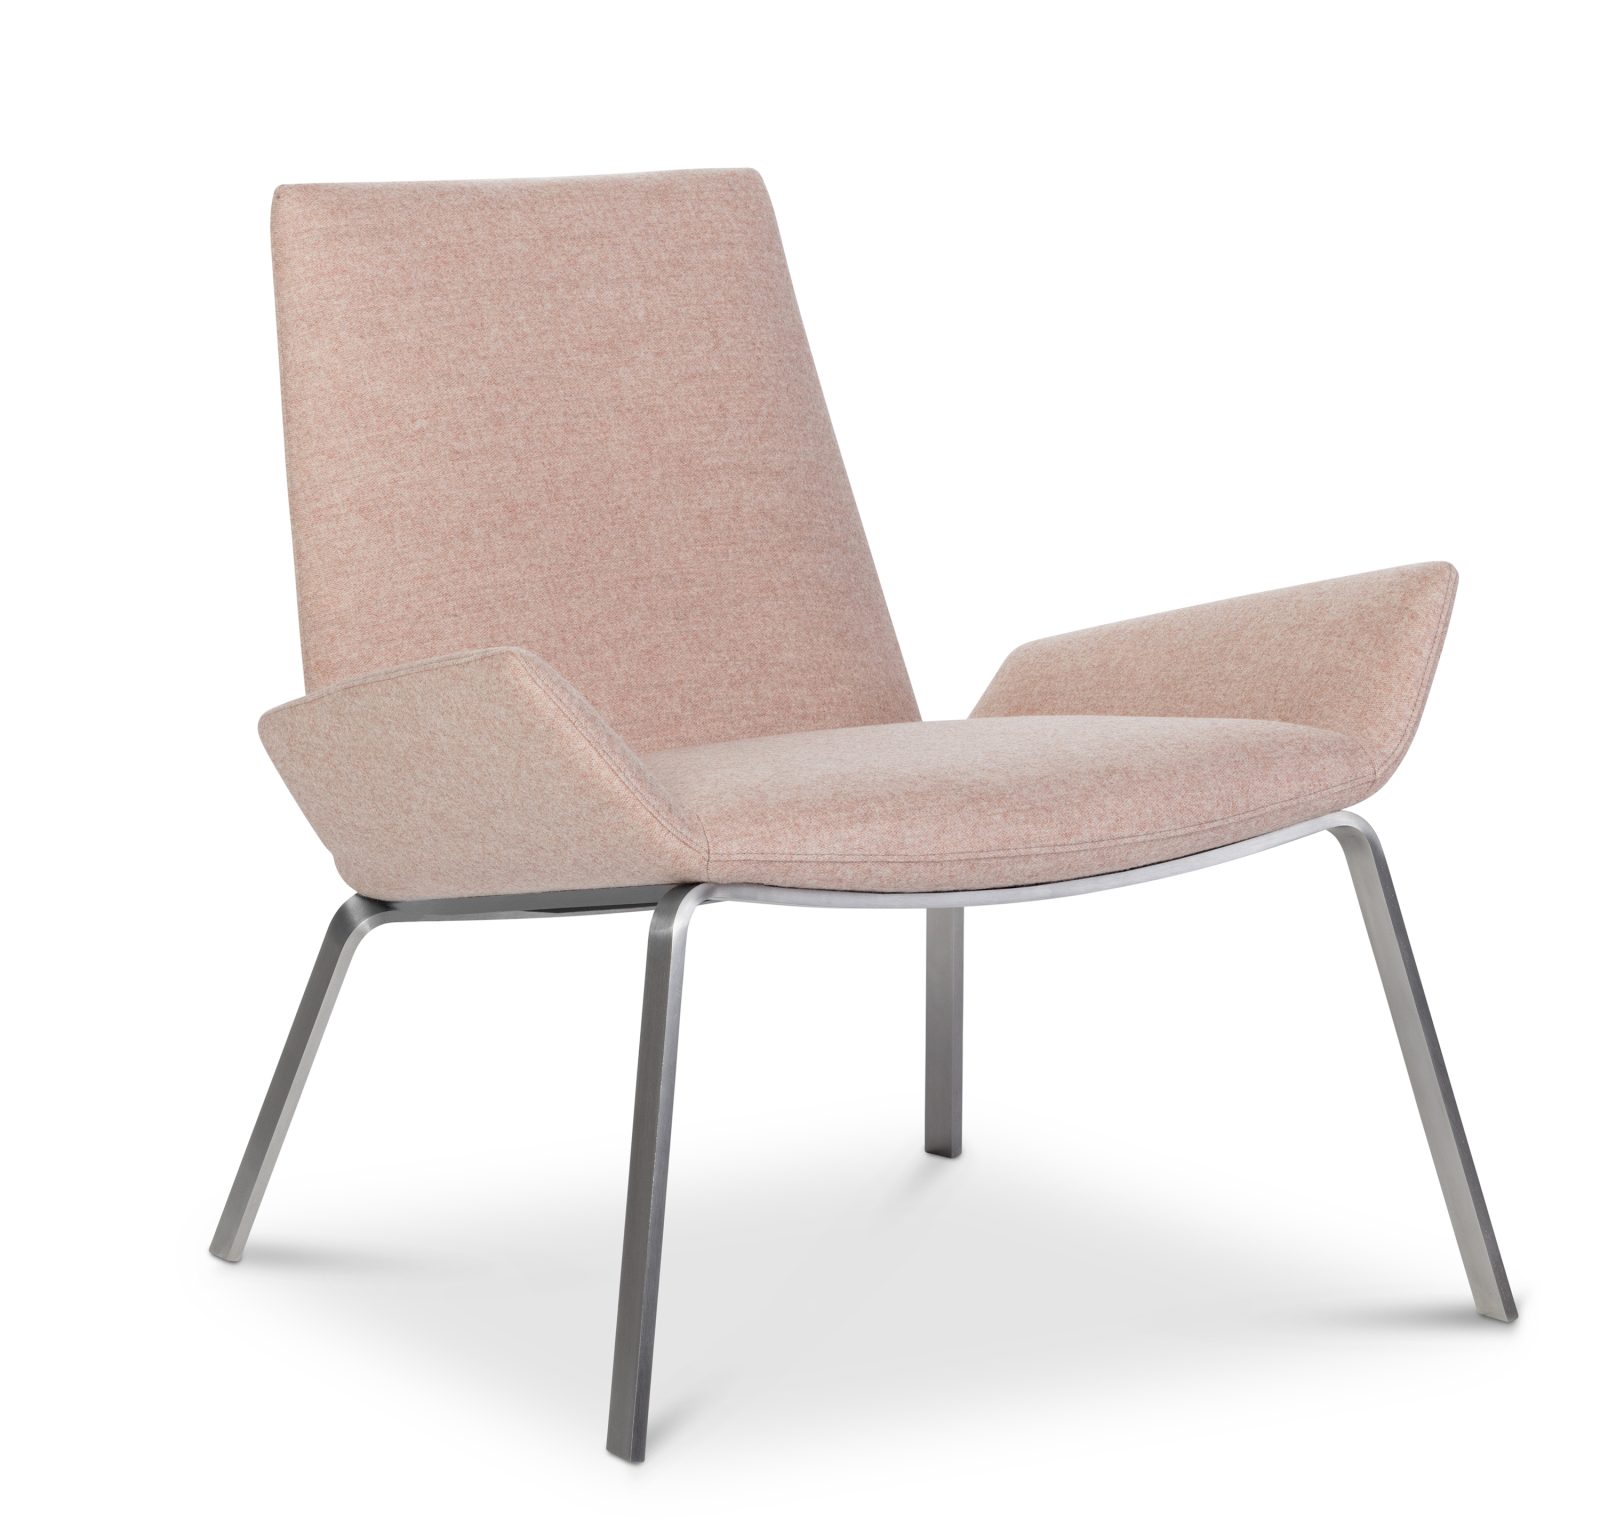 Design on Stock fauteuil Komio Onyx